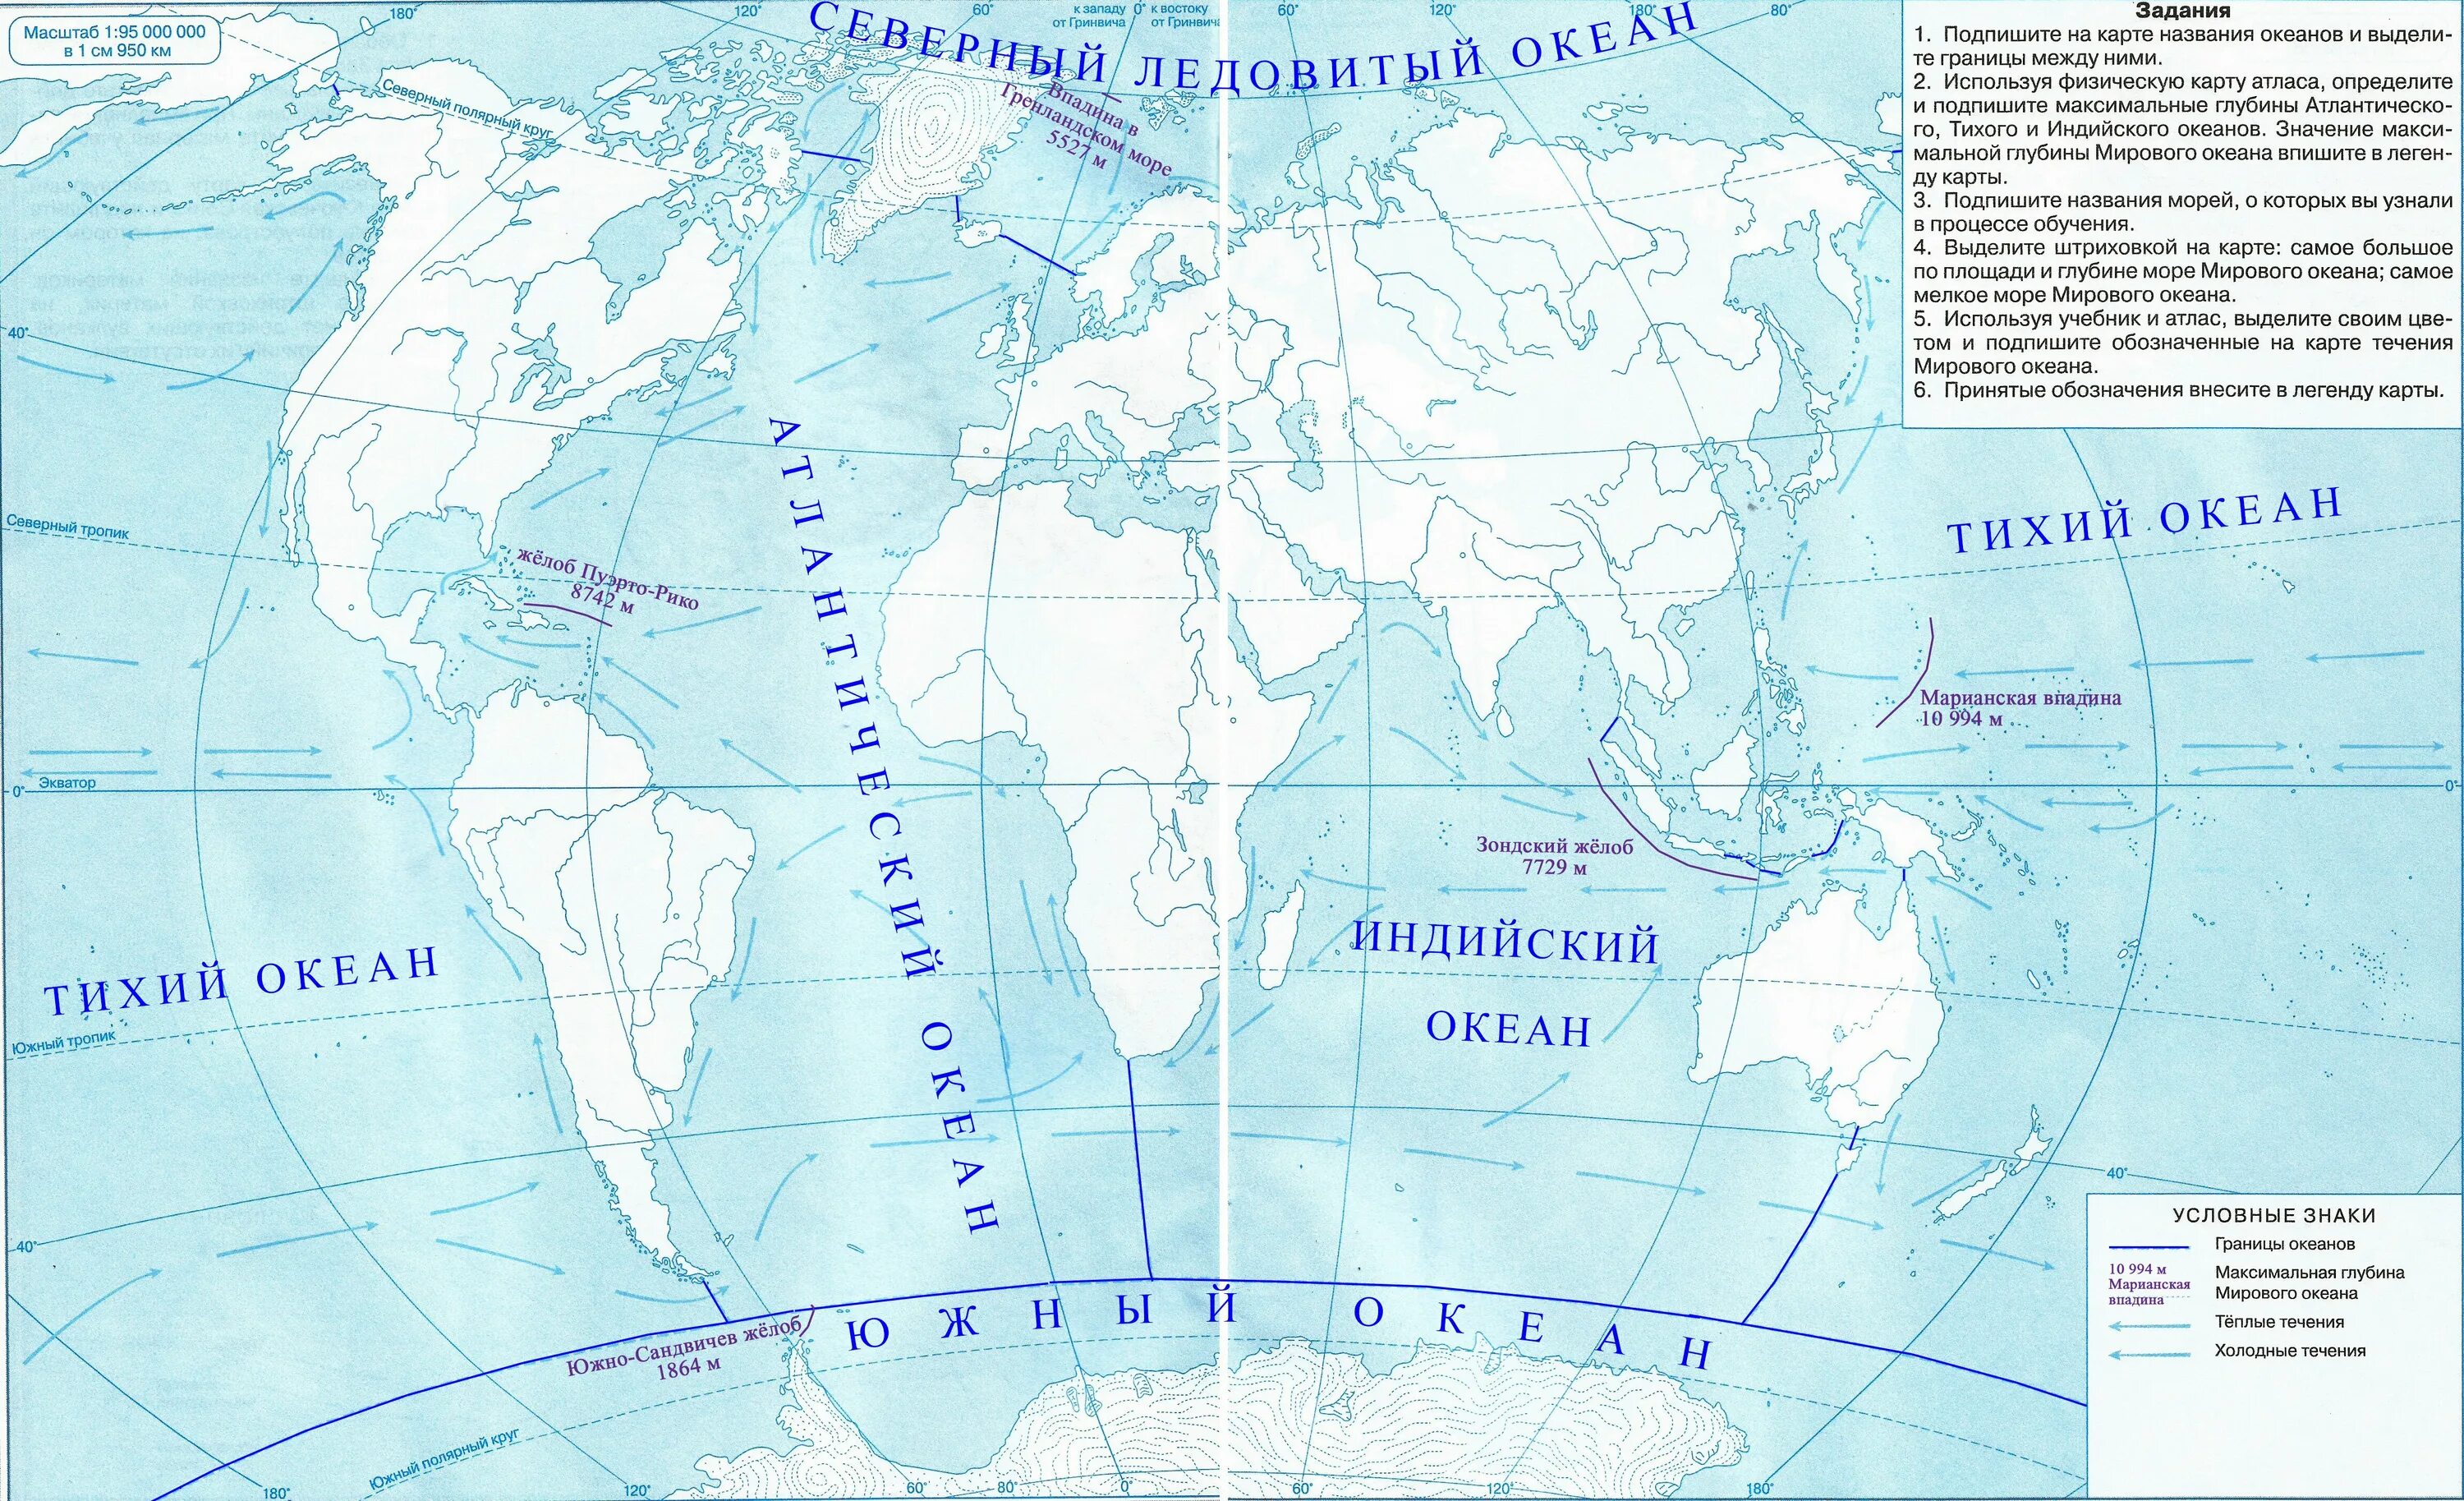 Максимальная глубина мирового океана на контурной карте 5 класс. Контурная карта Тихого океана. Контурная карта по географии 5 класс карта мирового океана. Максимальная глубина мирового океана на контурной карте.